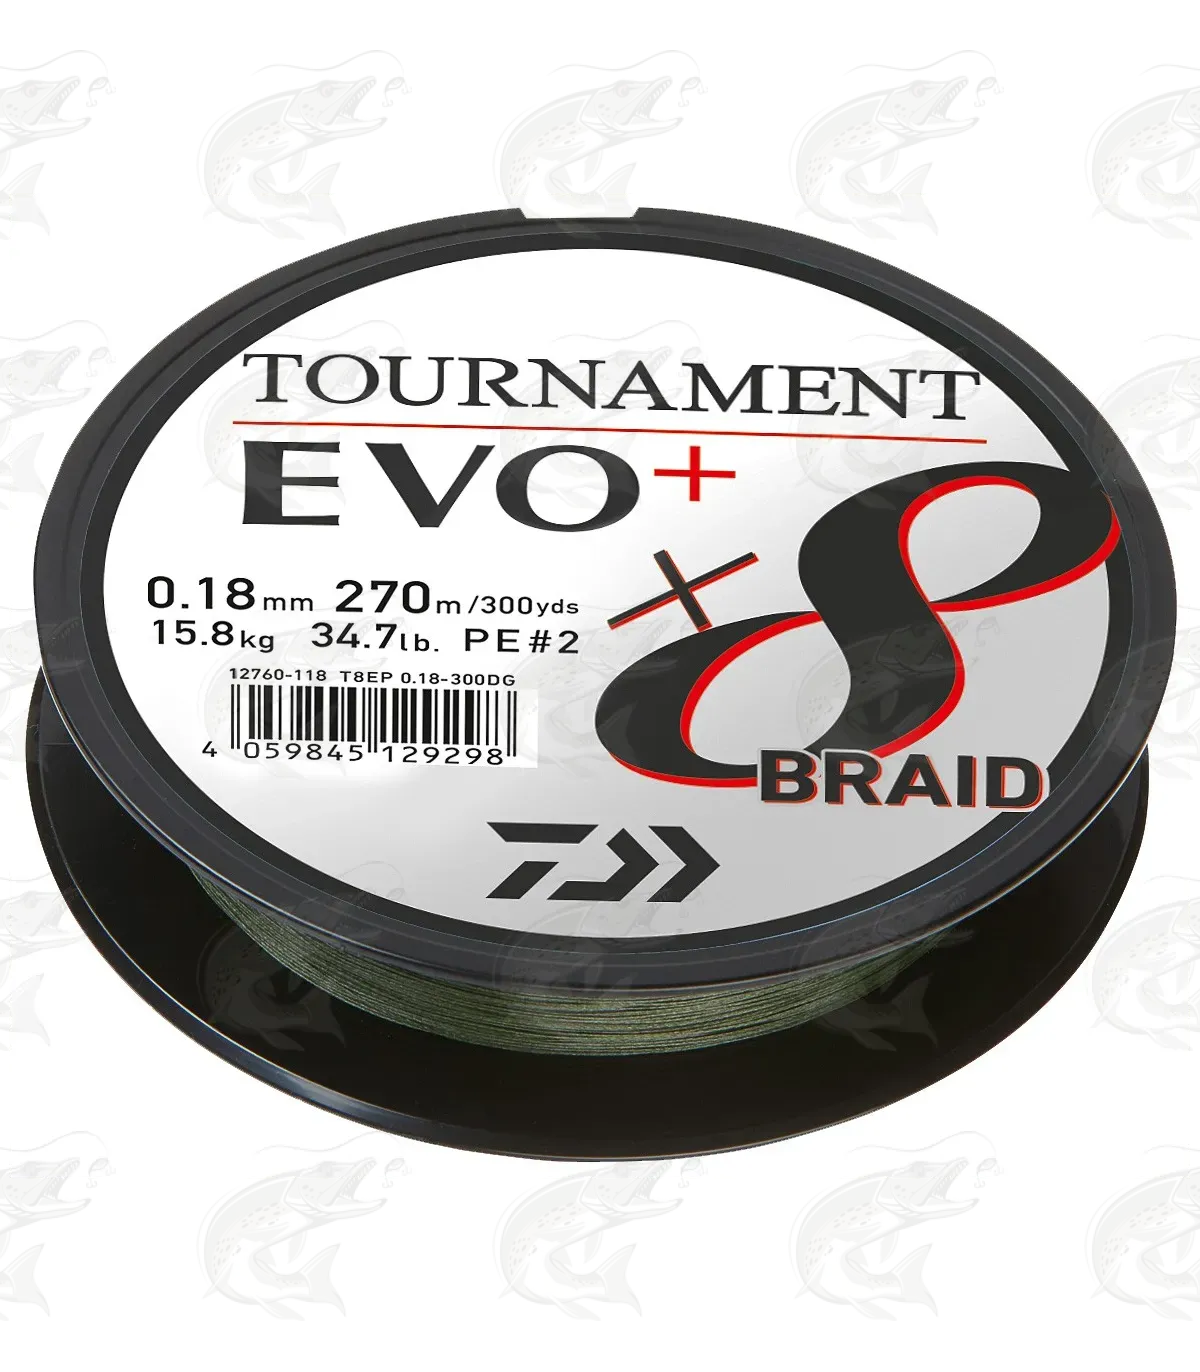 Daiwa Tournament X8 Braid Evo+